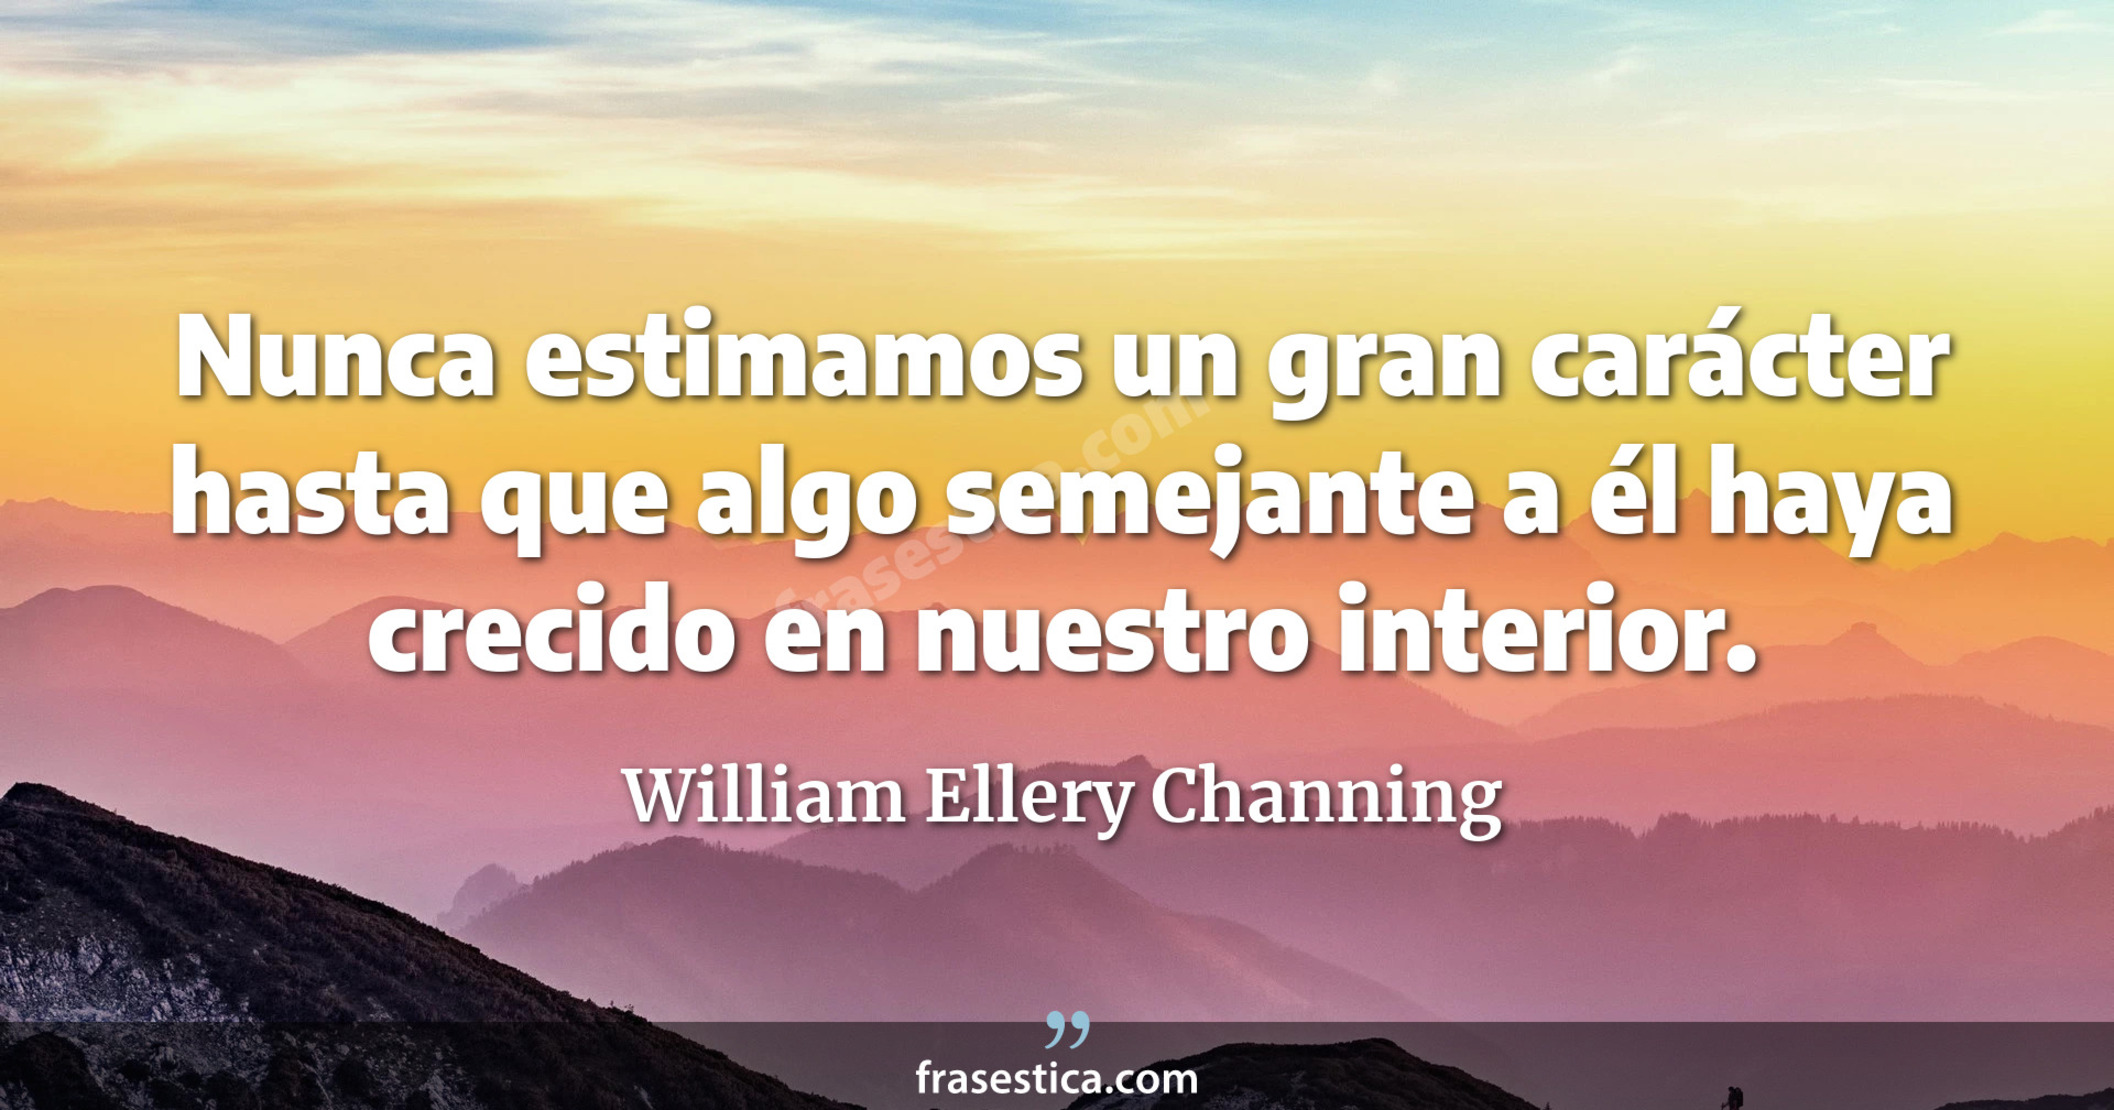 Nunca estimamos un gran carácter hasta que algo semejante a él haya crecido en nuestro interior. - William Ellery Channing